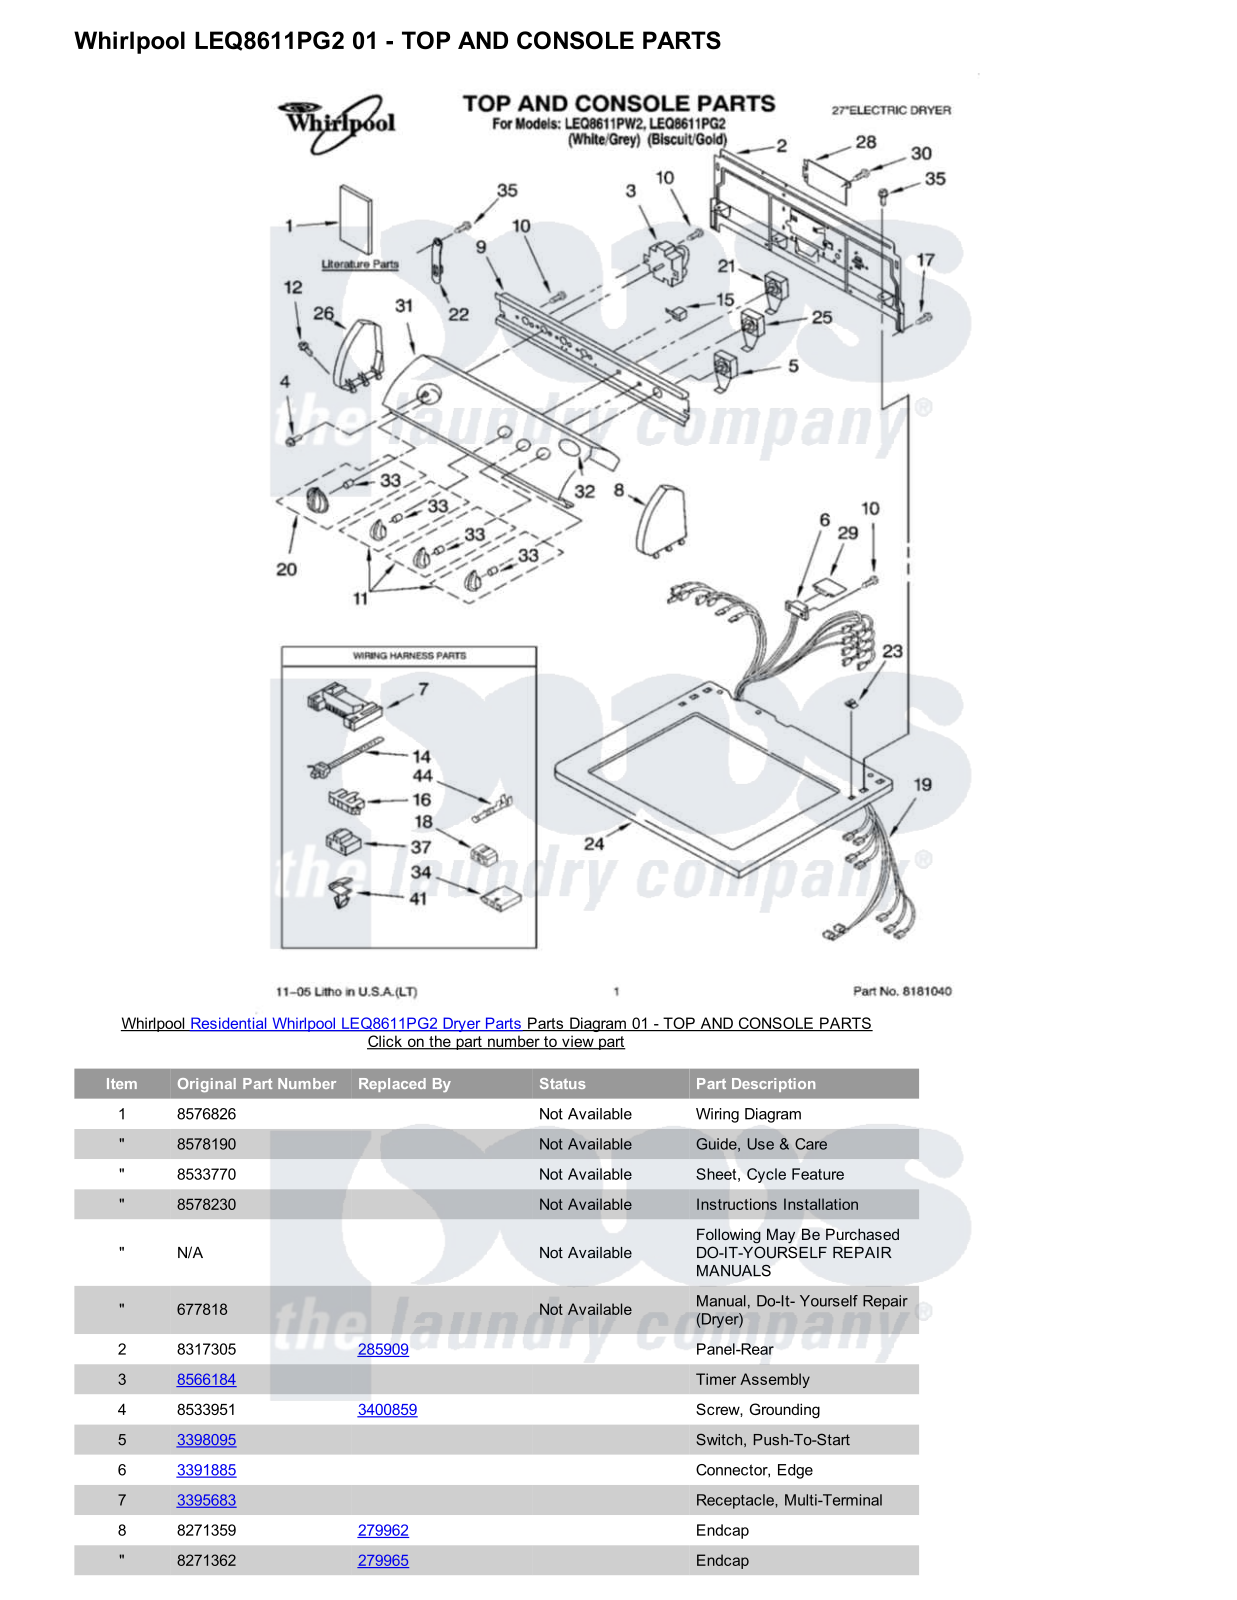 Whirlpool LEQ8611PG2 Parts Diagram